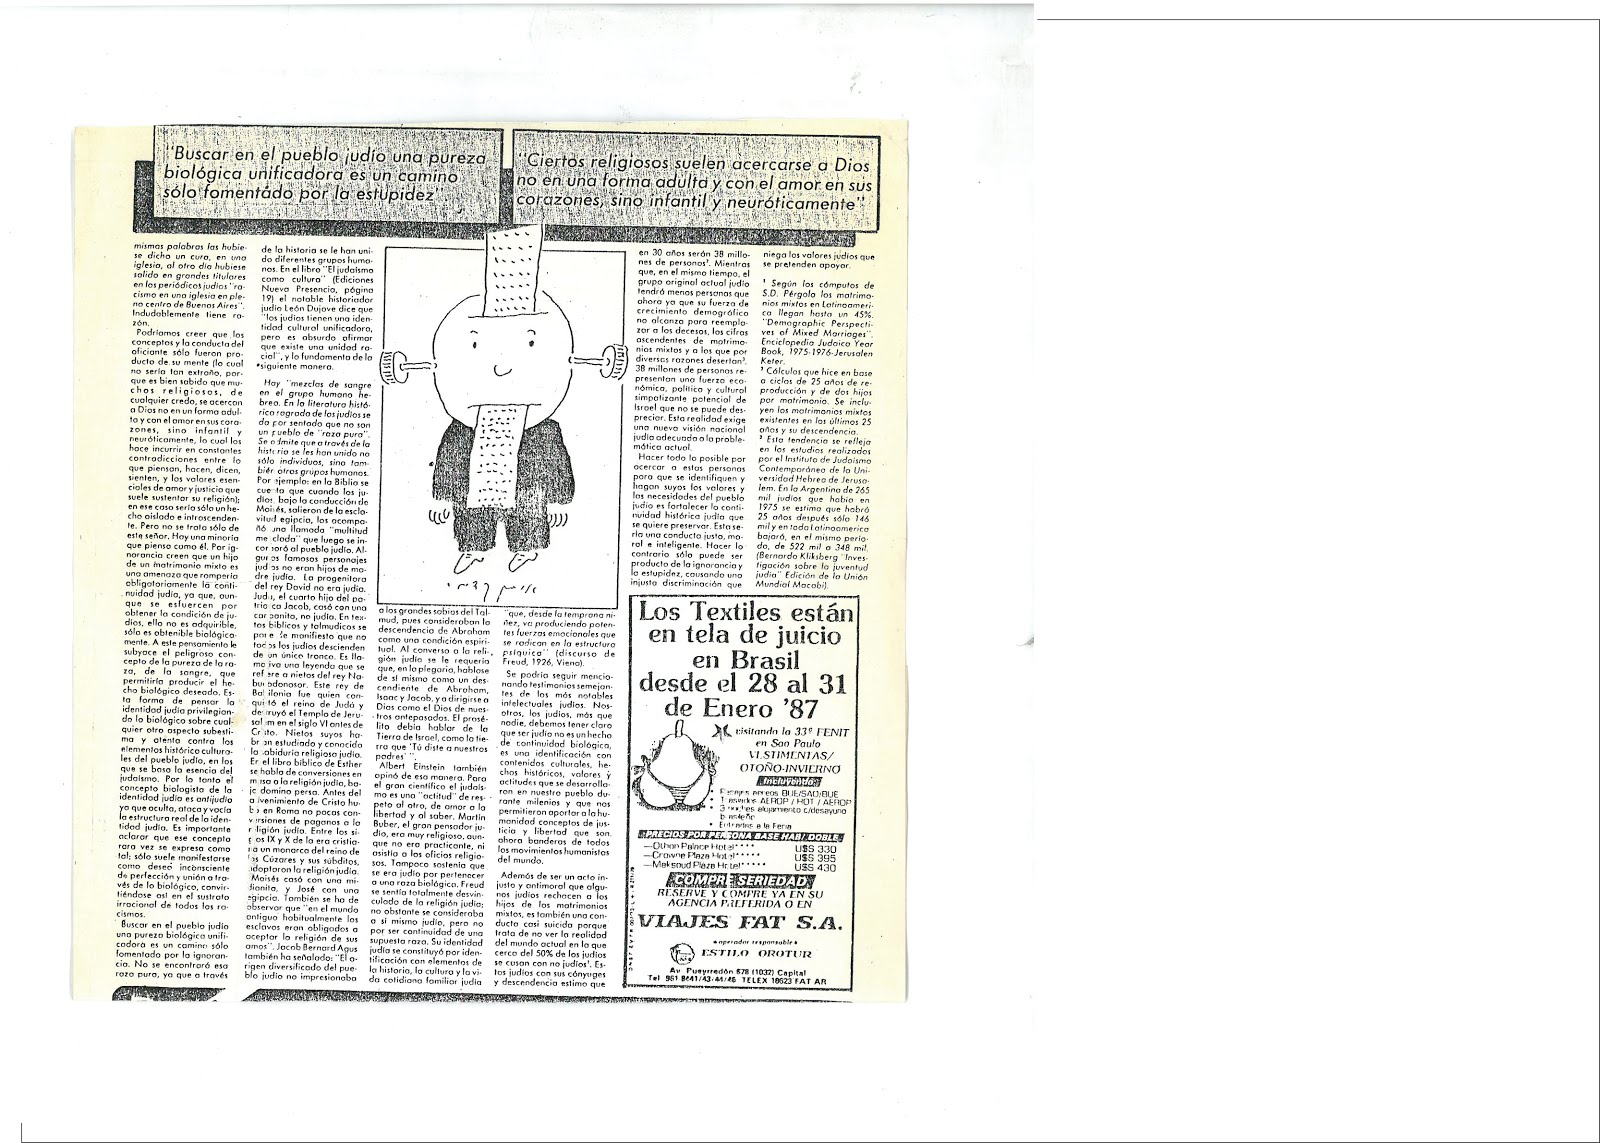 37b - Página 2 PUBLICADO EL 12/12/1986 POR EL PERIÓDICO JUDÍO ARGENTINO NUEVA PRESENCIA. ESTE HECHO